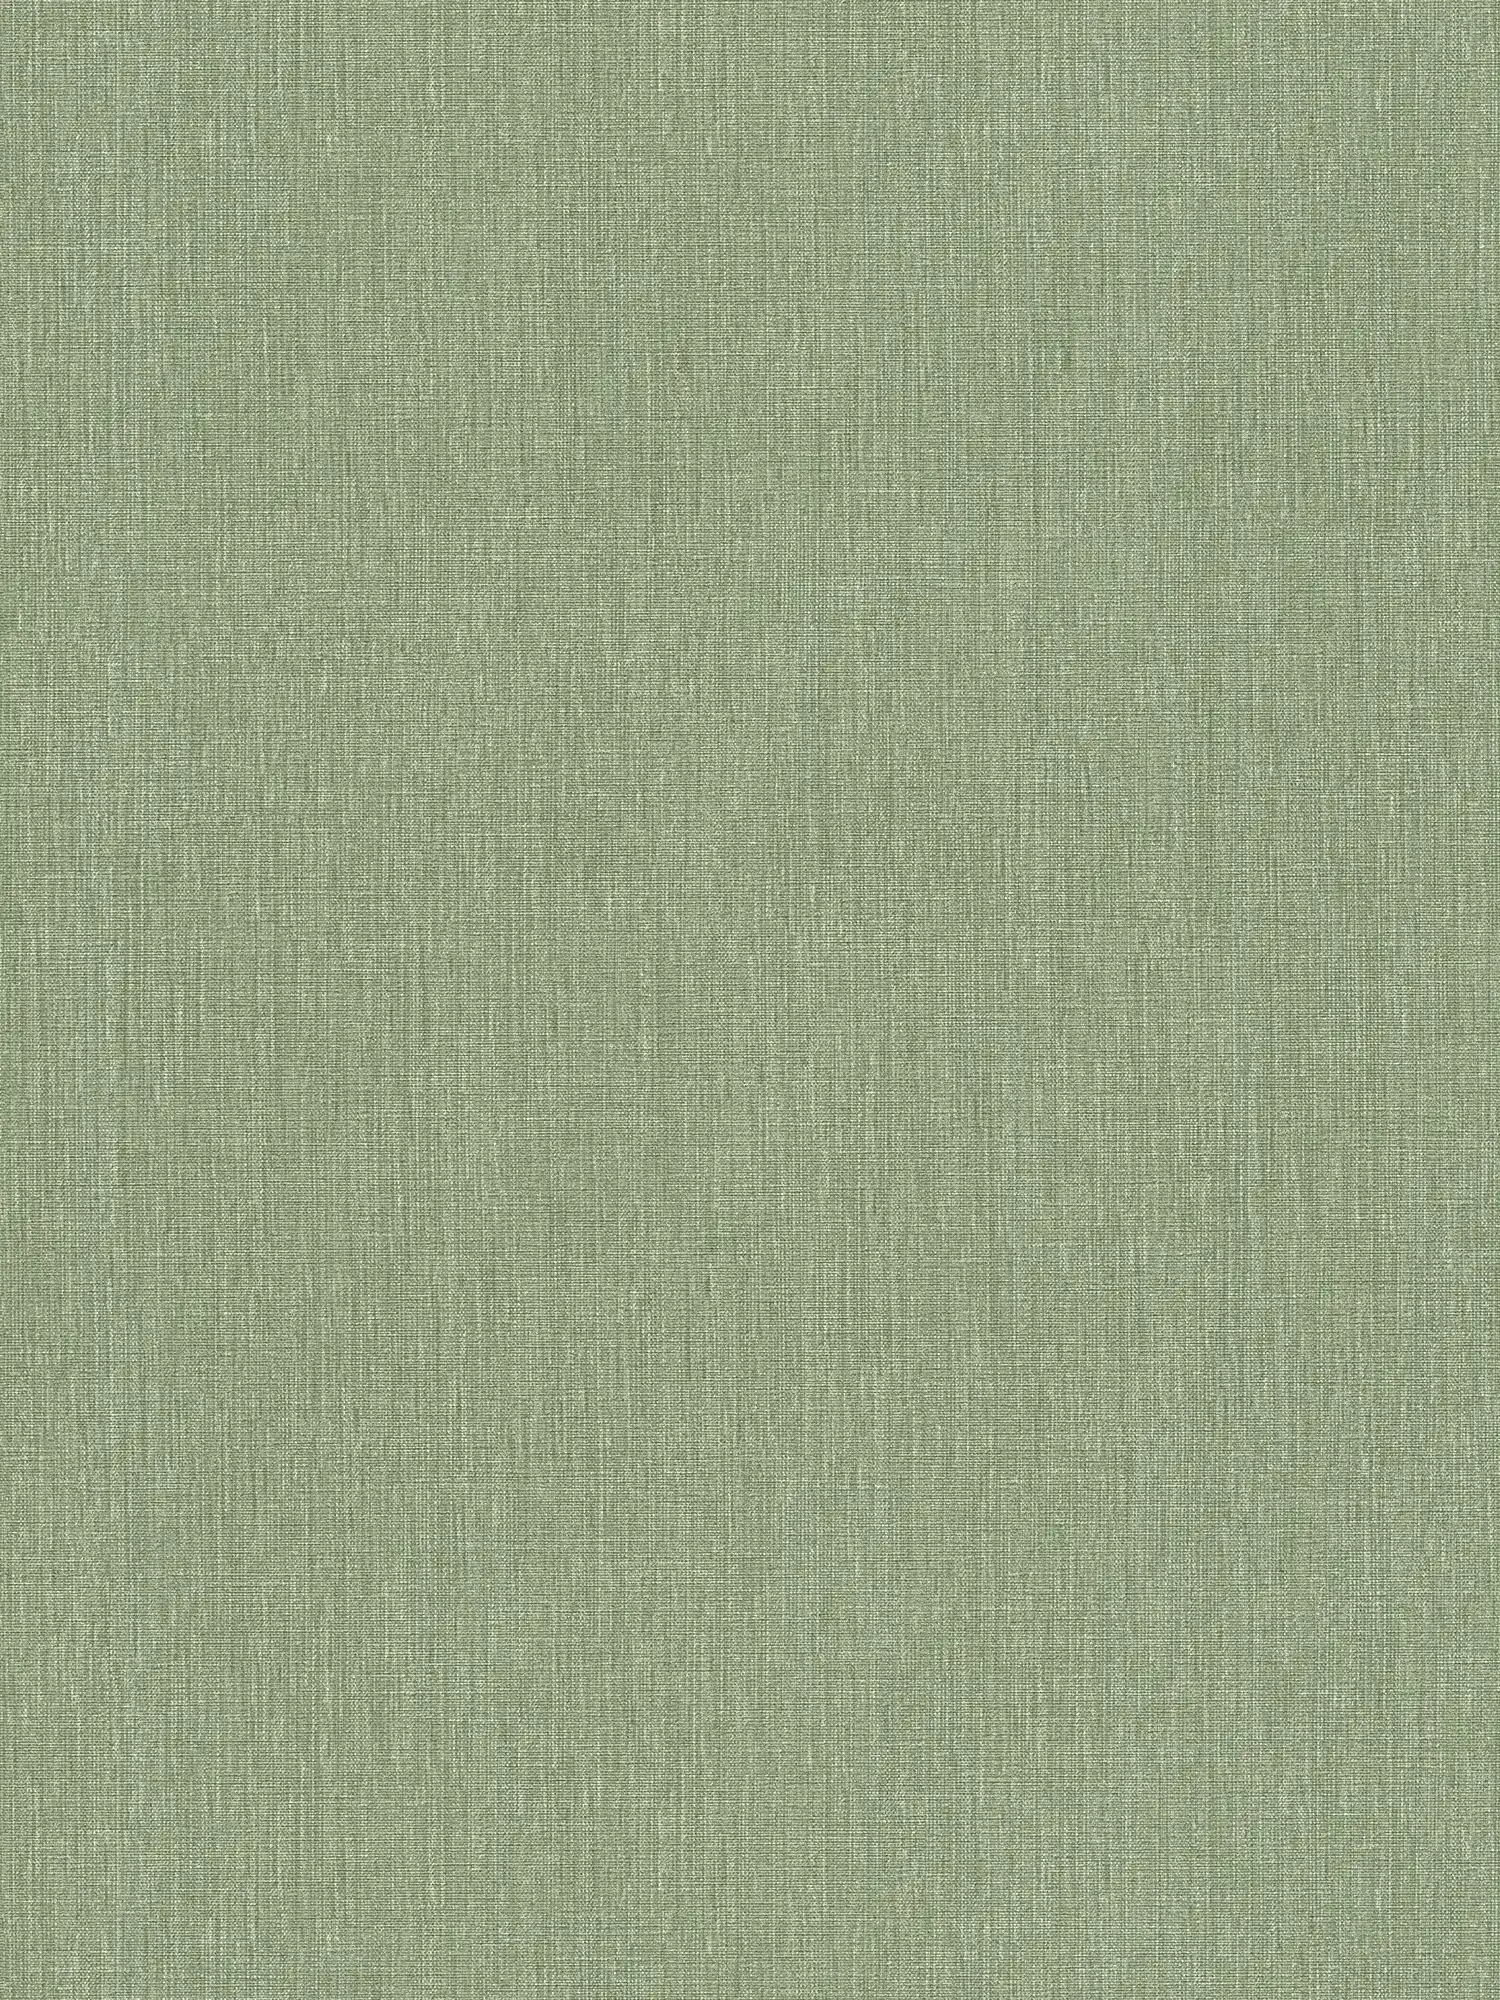 Papel pintado de tejido-no-tejido con textura ligera y aspecto textil - verde
